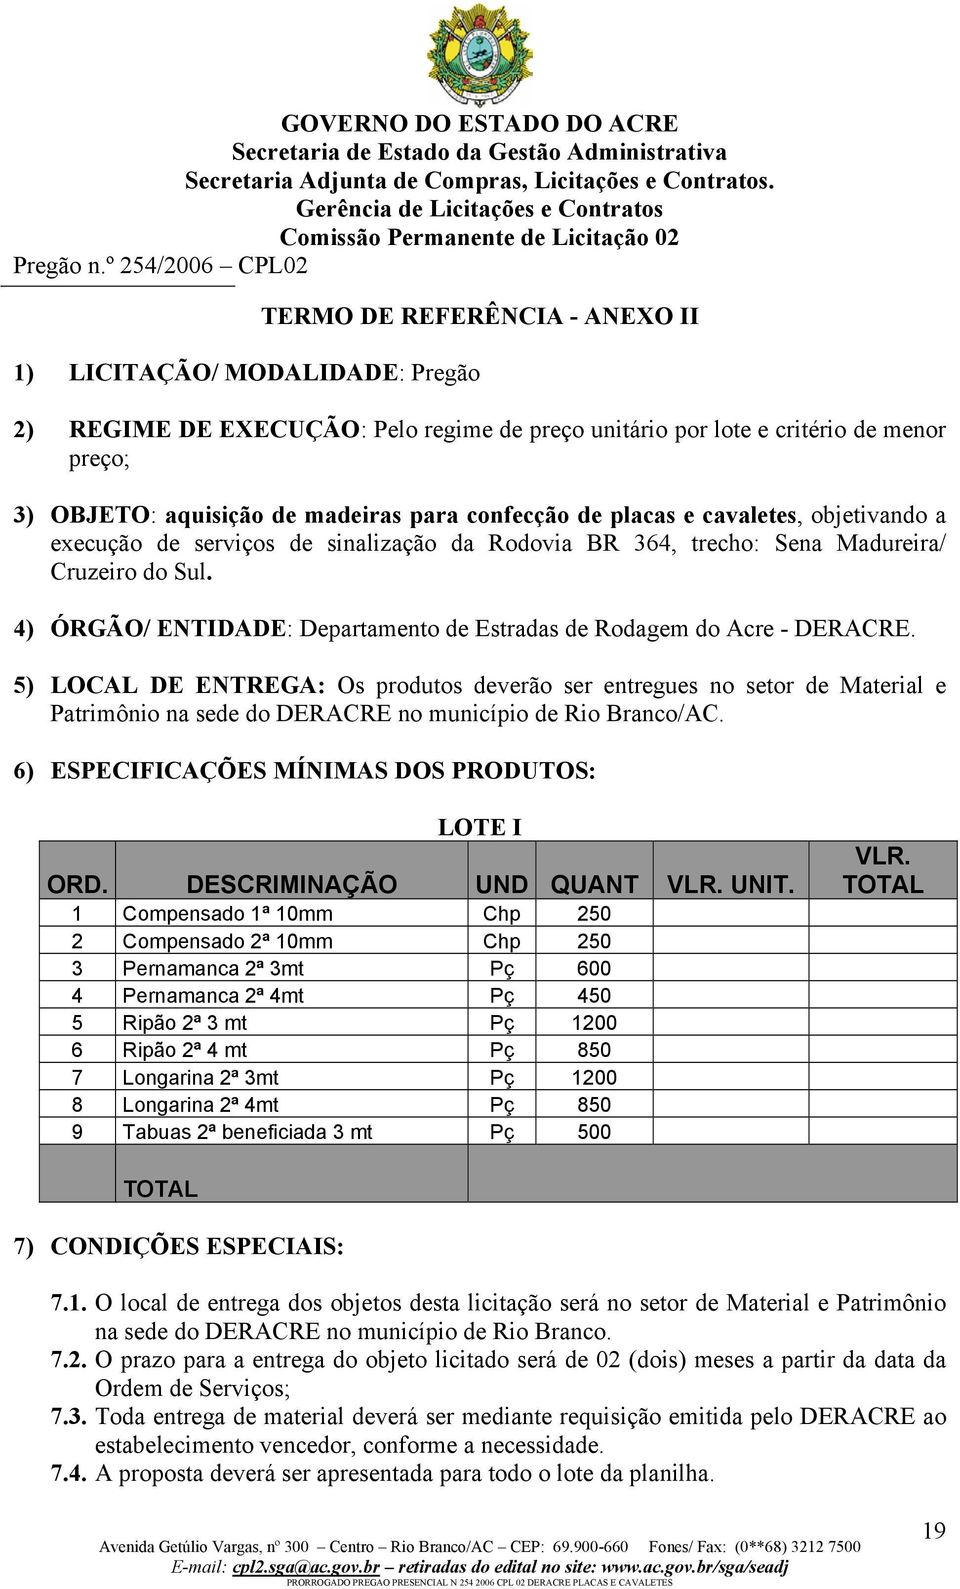 4) ÓRGÃO/ ENTIDADE: Departamento de Estradas de Rodagem do Acre - DERACRE.